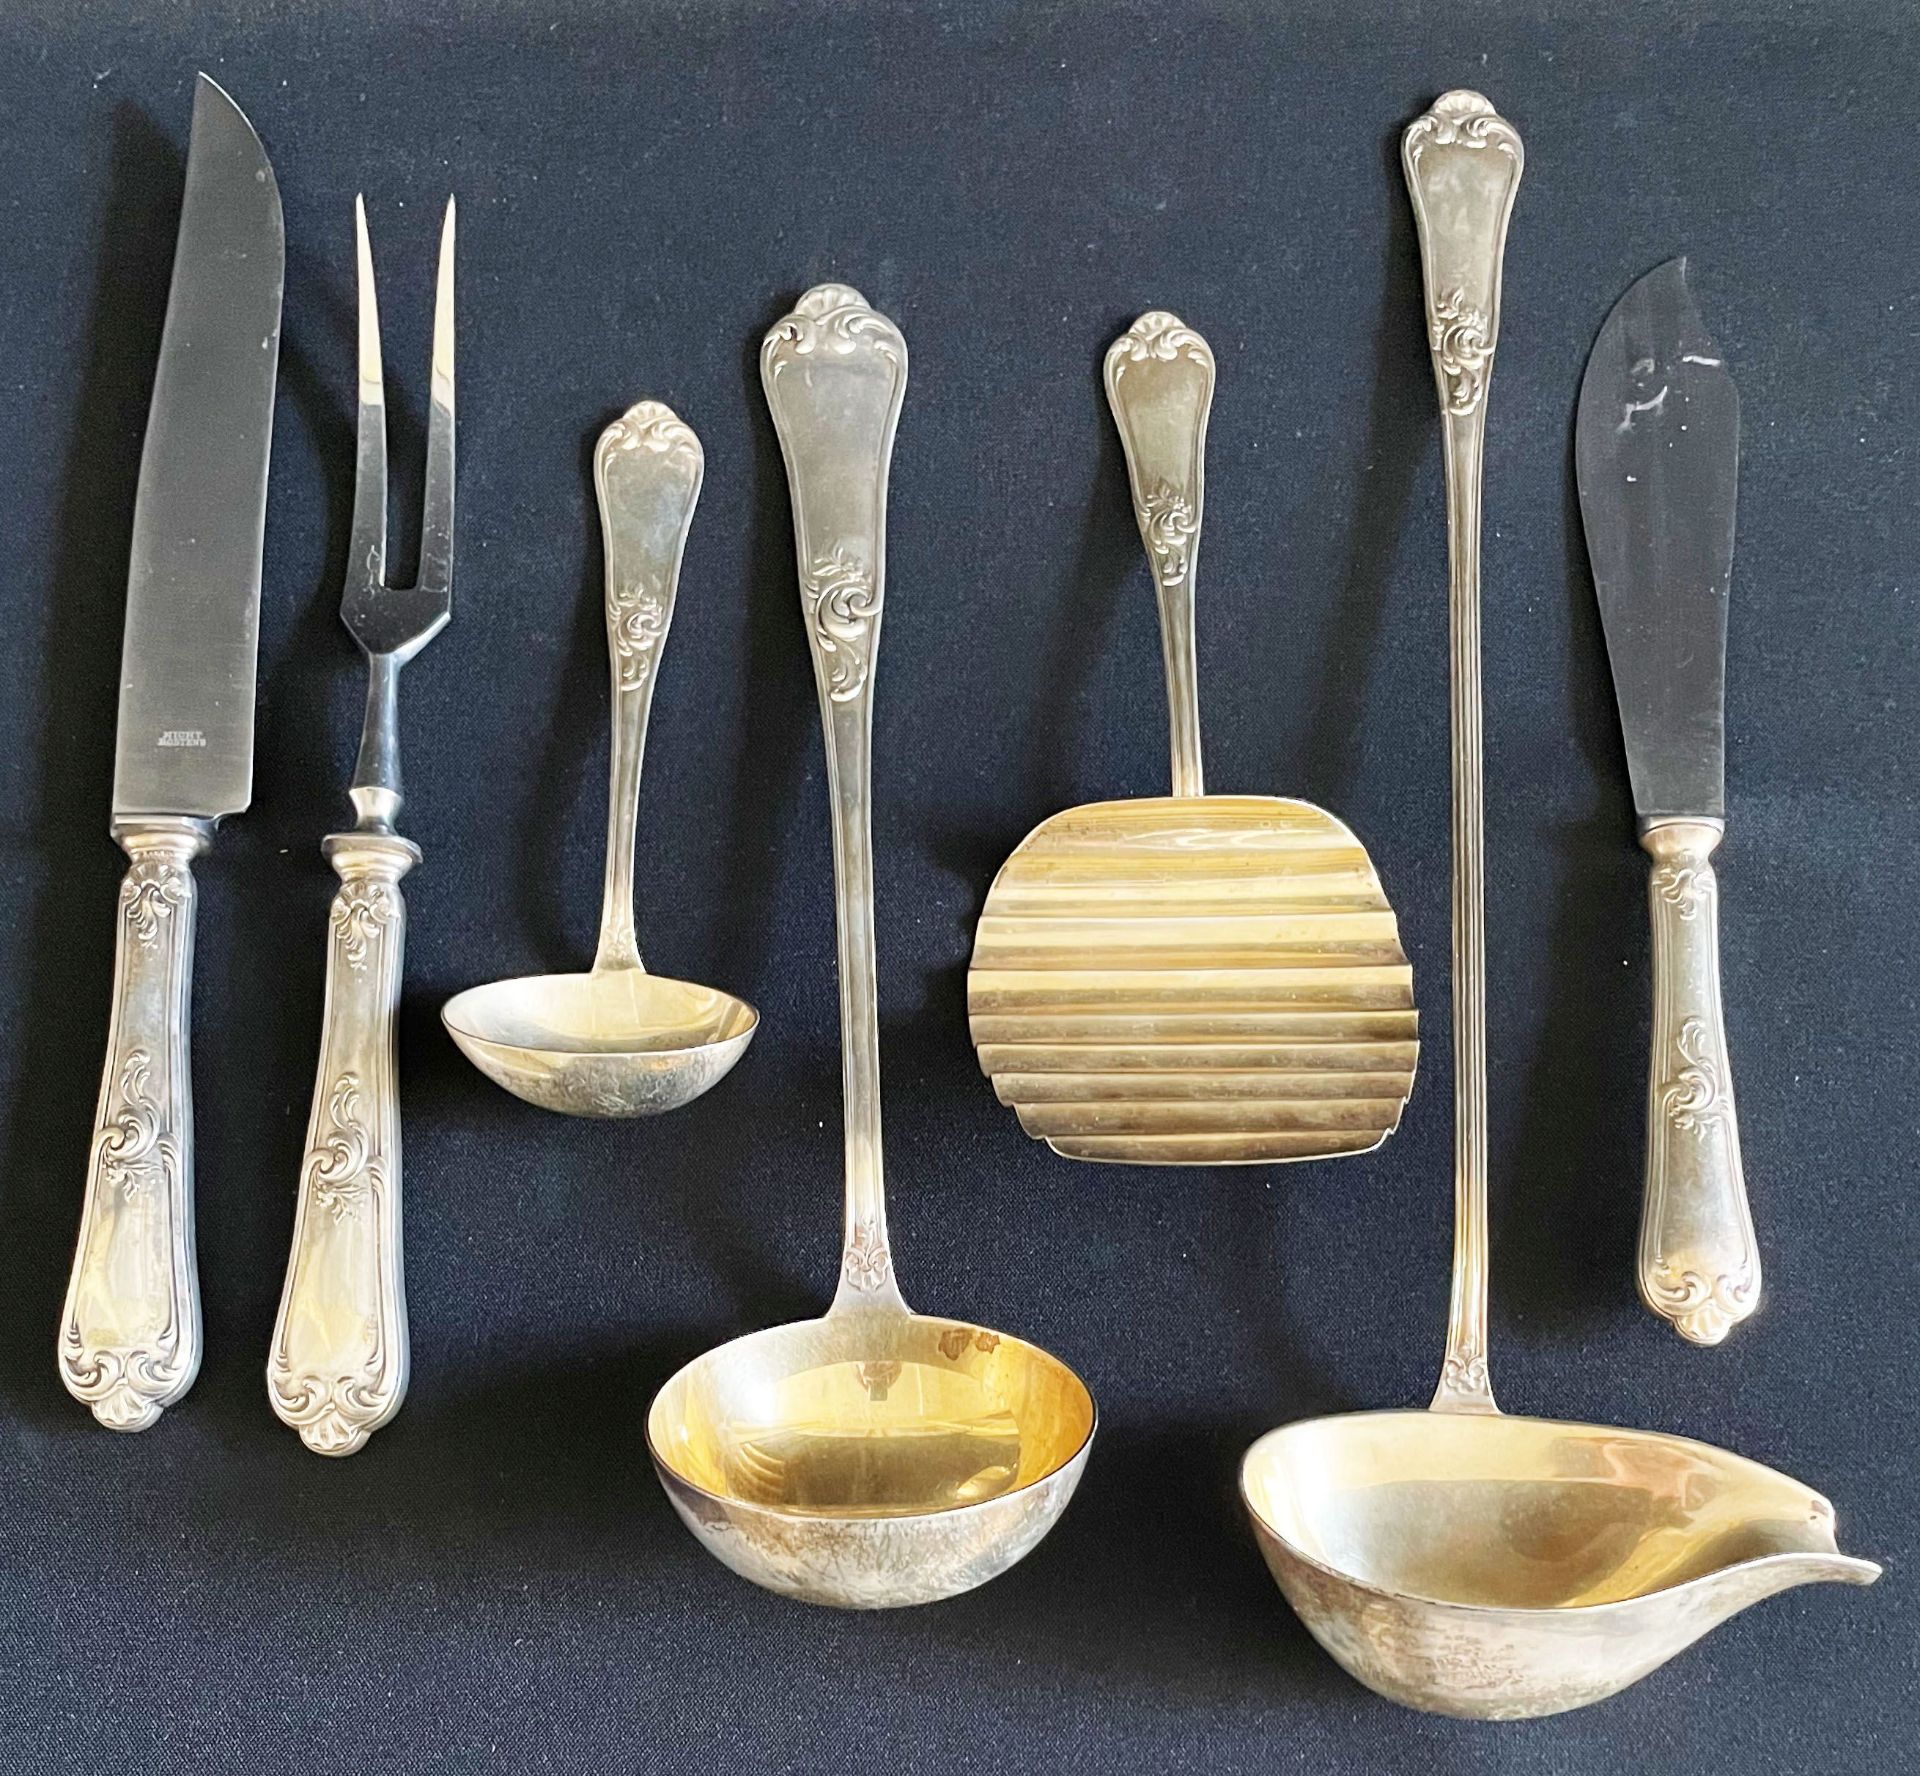 Silberbesteck für 12 Personen, Bruckmann, gepunzt, 800er Silber: große Messer, Gabeln und Löffel, - Image 4 of 8